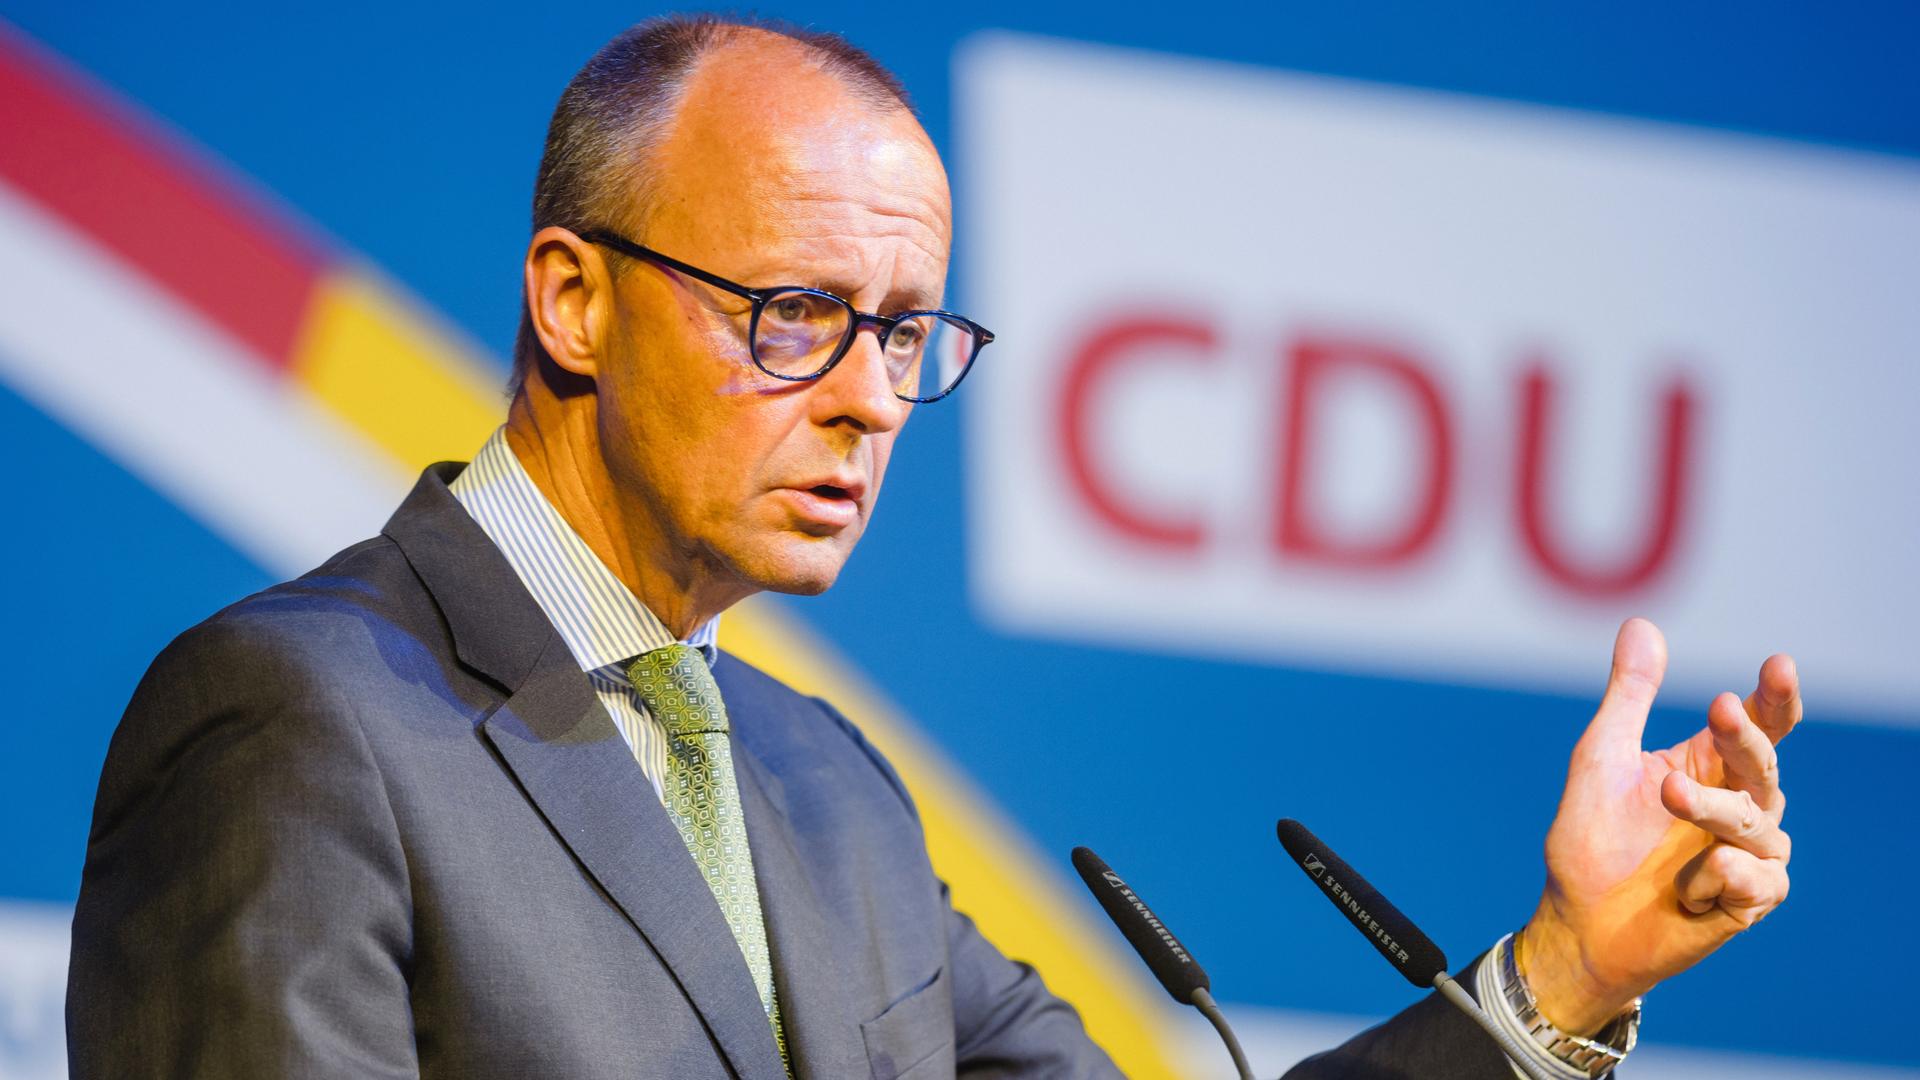 Vor Wahlen in Ostländern - CDU-Chef Merz betont Distanz zur AfD